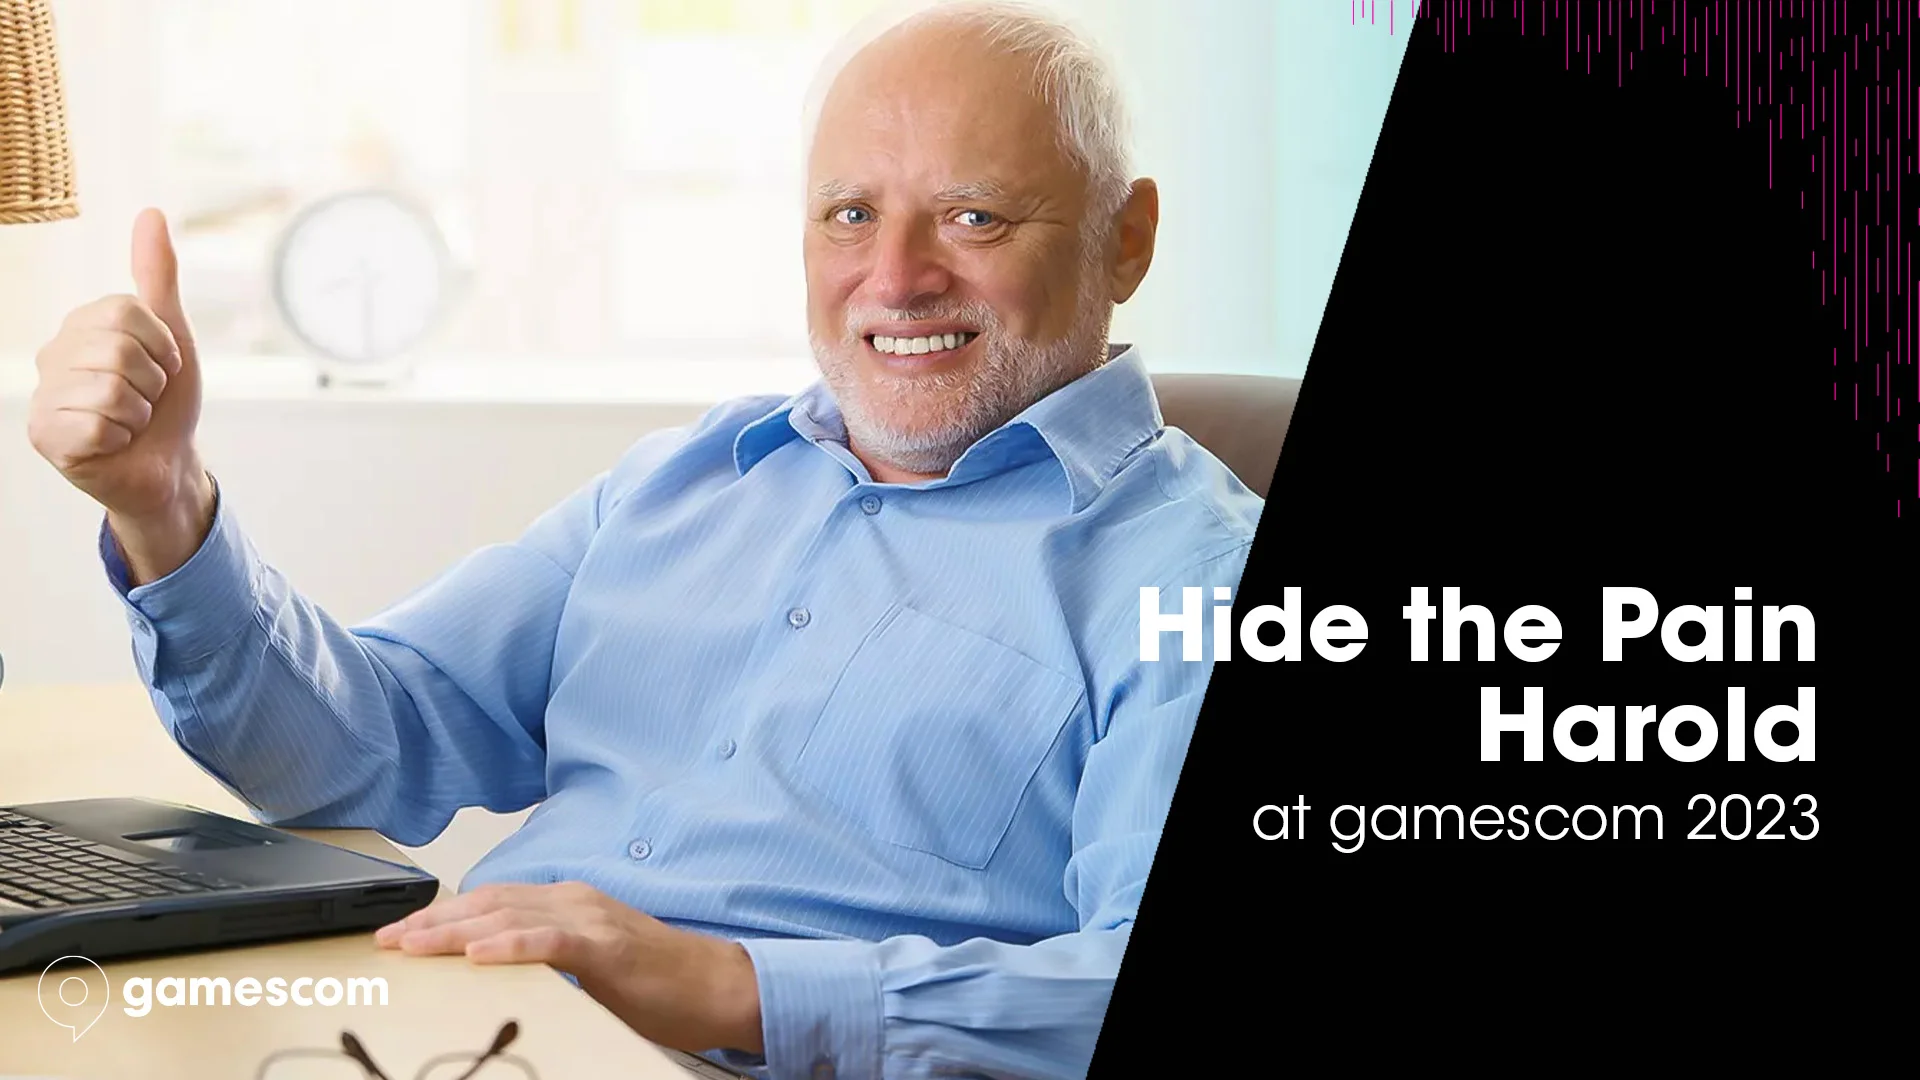 Выставку gamescom 2023 посетит герой мема «Гарольд, скрывающий боль»